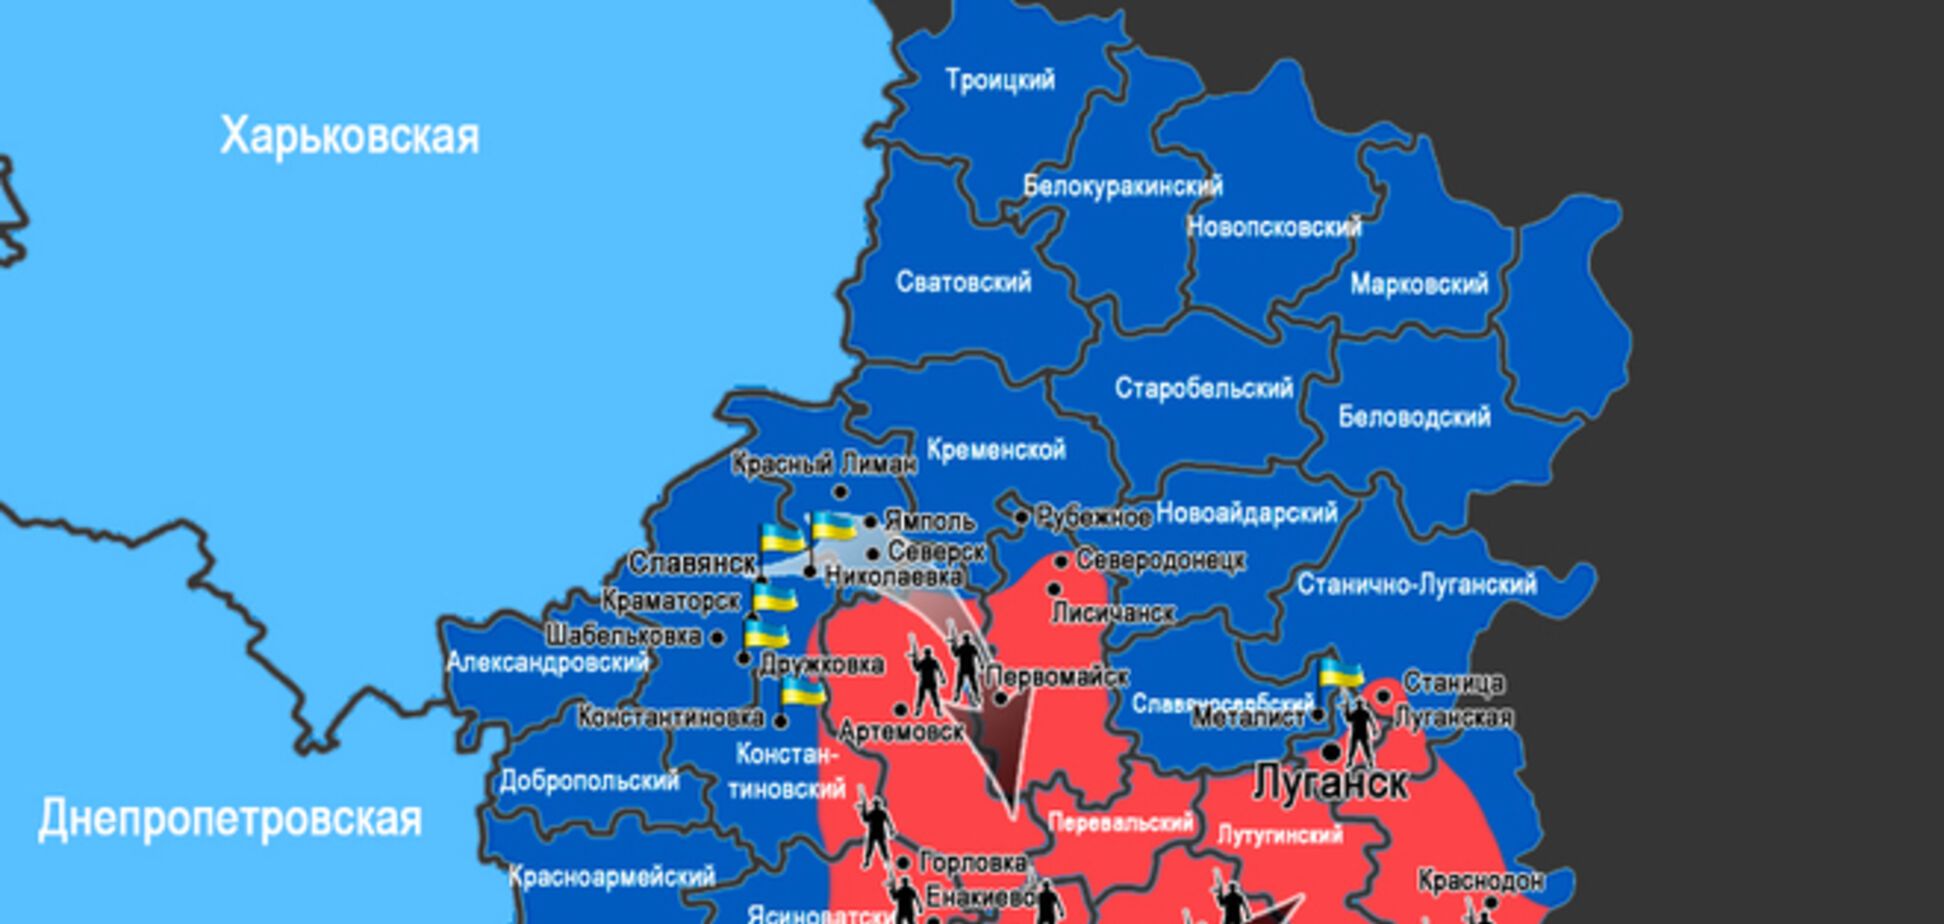 Актуальная карта ситуации на востоке Украины